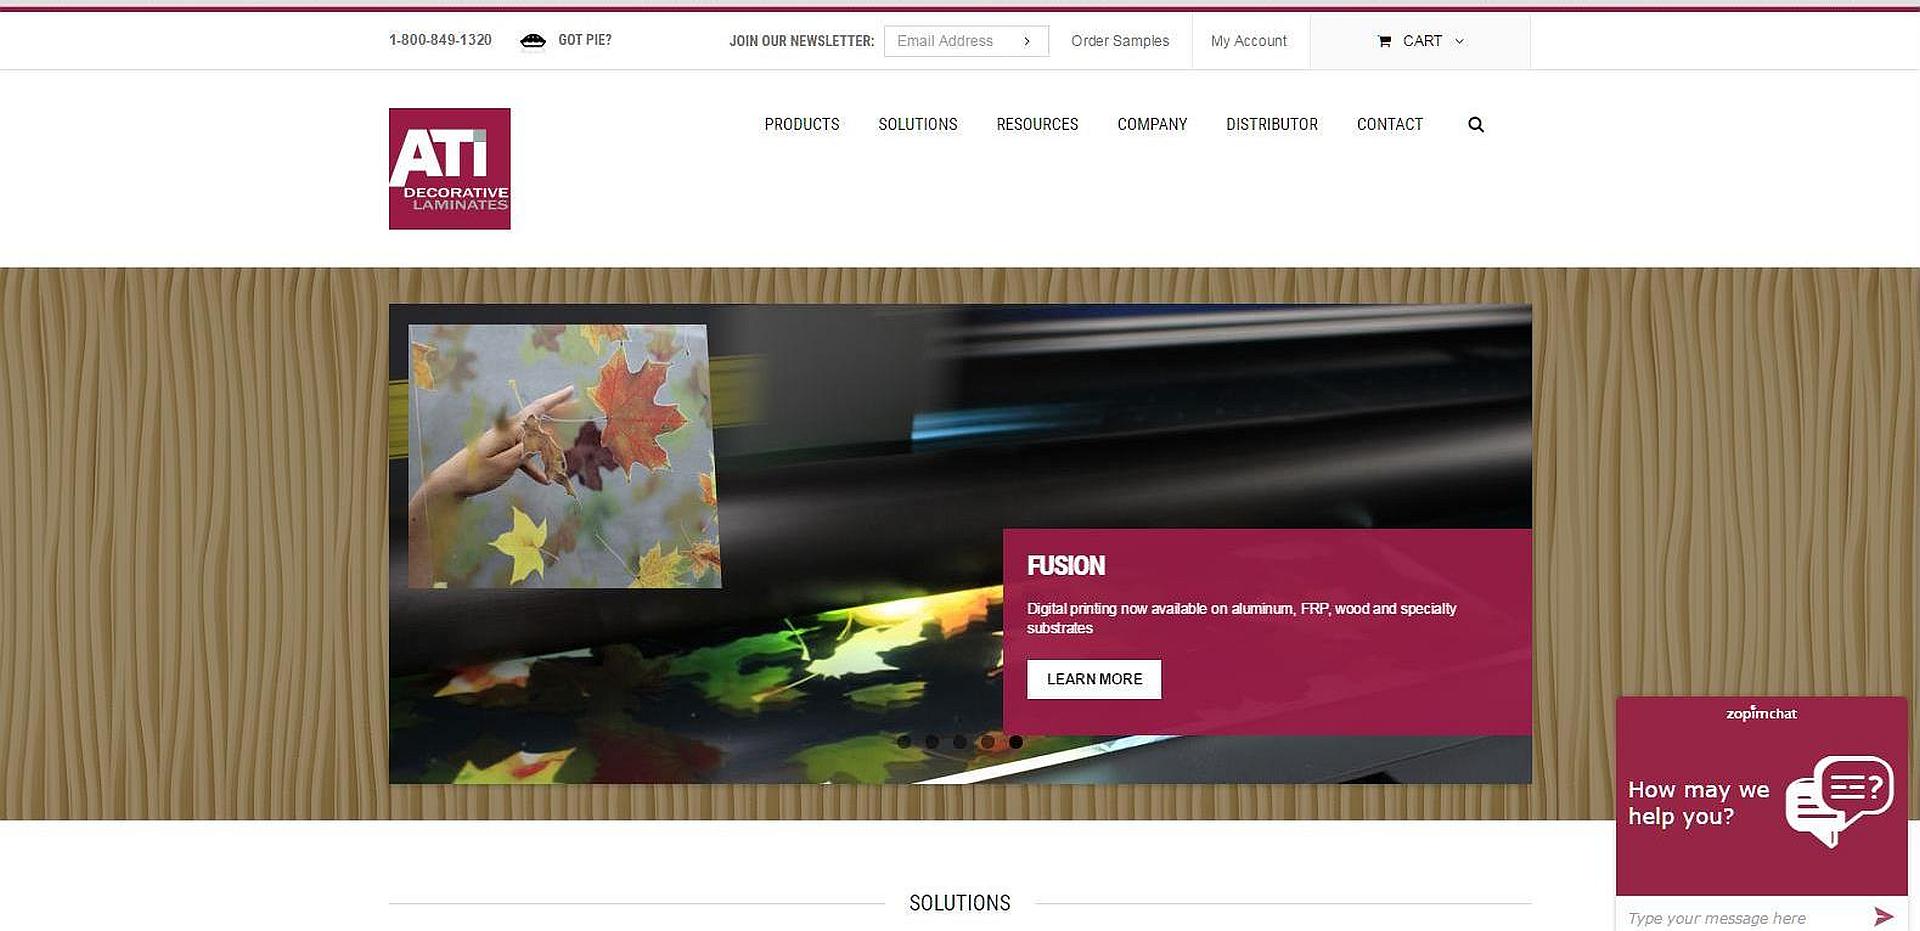 ATI Decorative Laminates Revamps Website